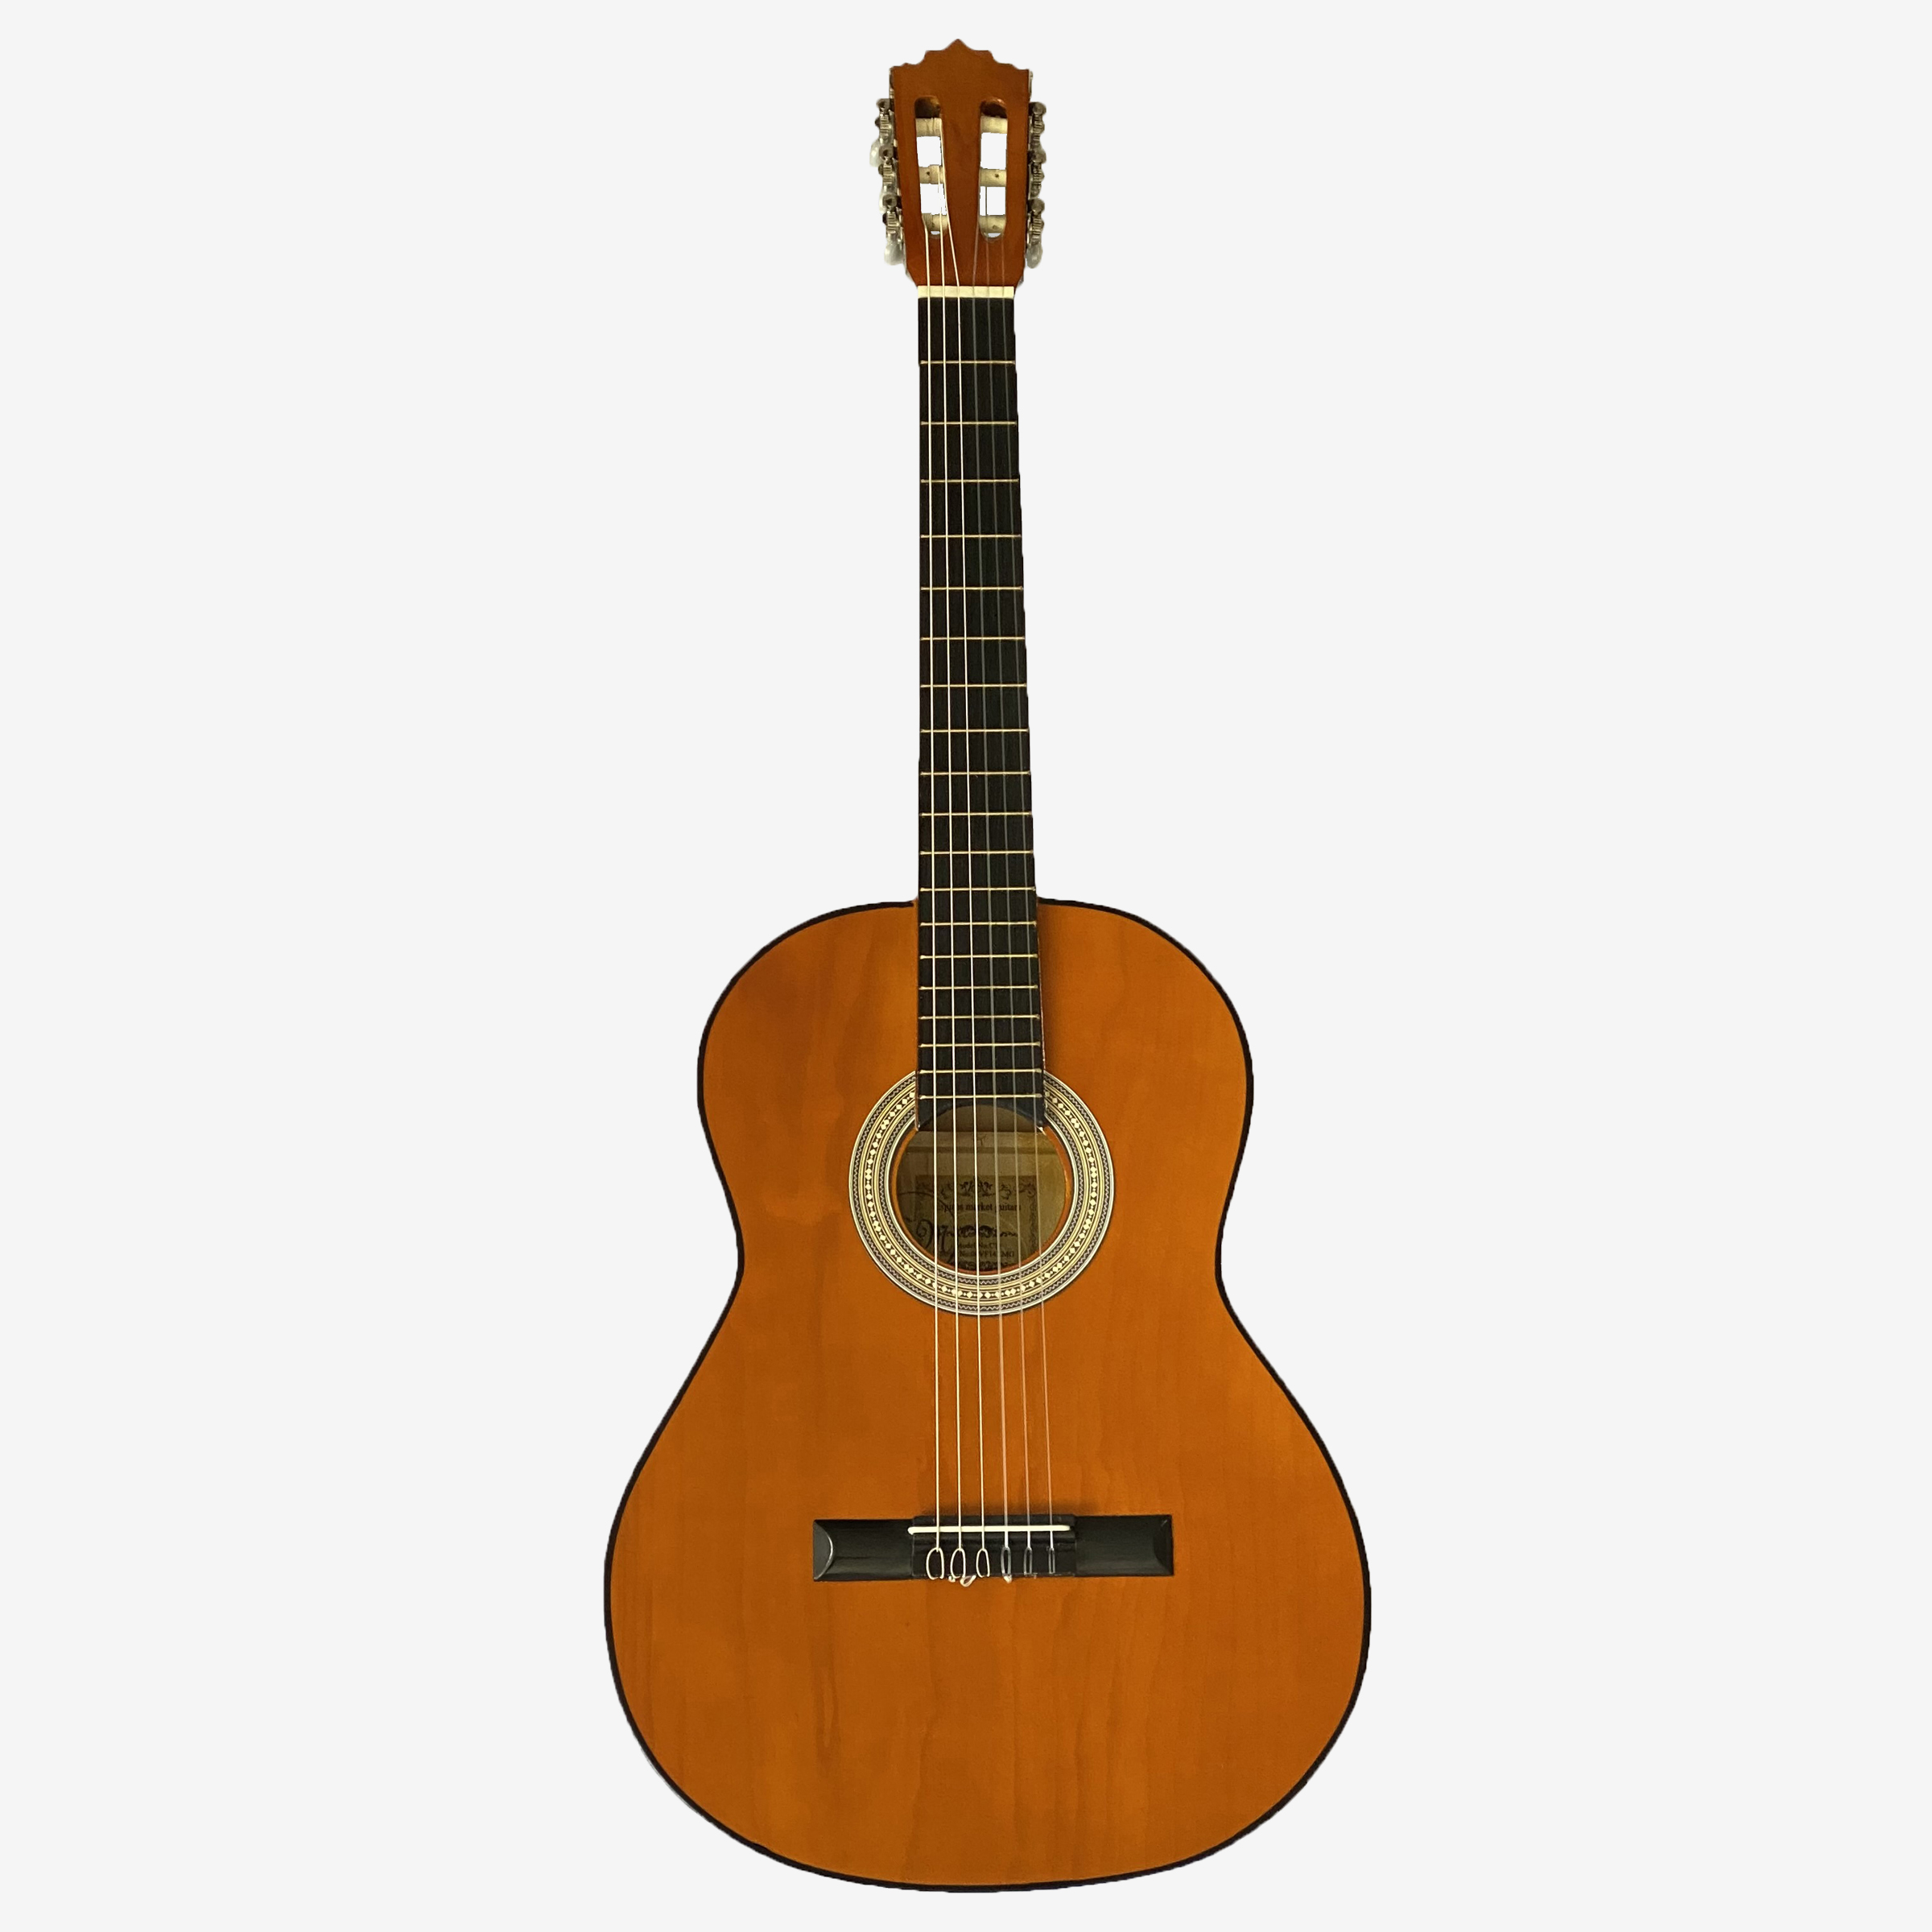 نکته خرید - قیمت روز گیتار کلاسیک اسپیروس مارکت مدل C.70 خرید